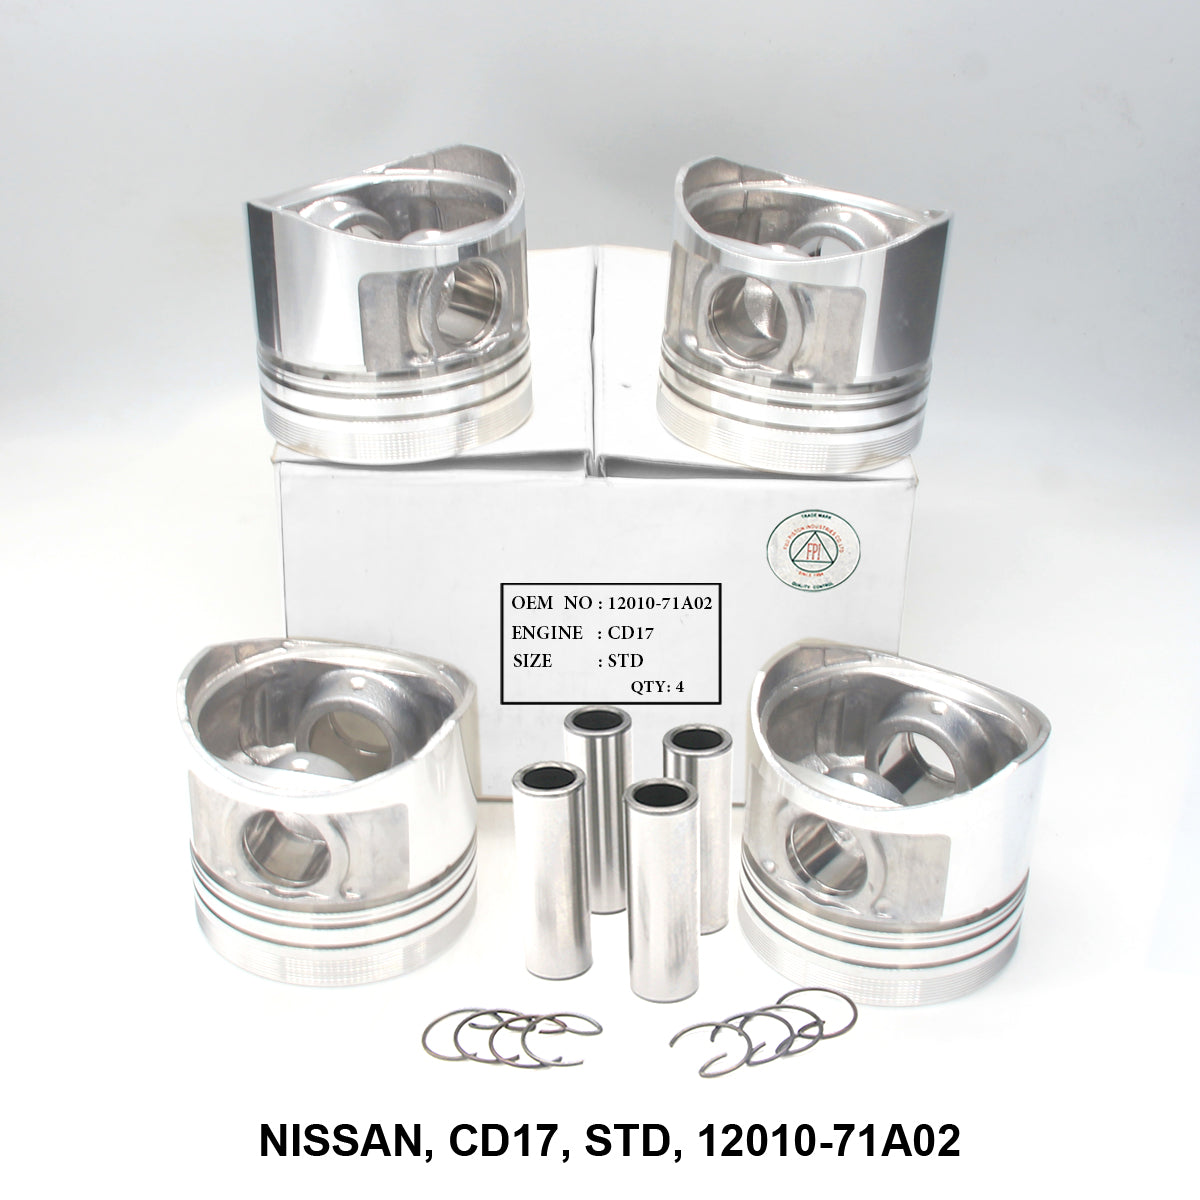 Piston W/Pin, FPI, CD17, STD, 12010-71A02 (001651)